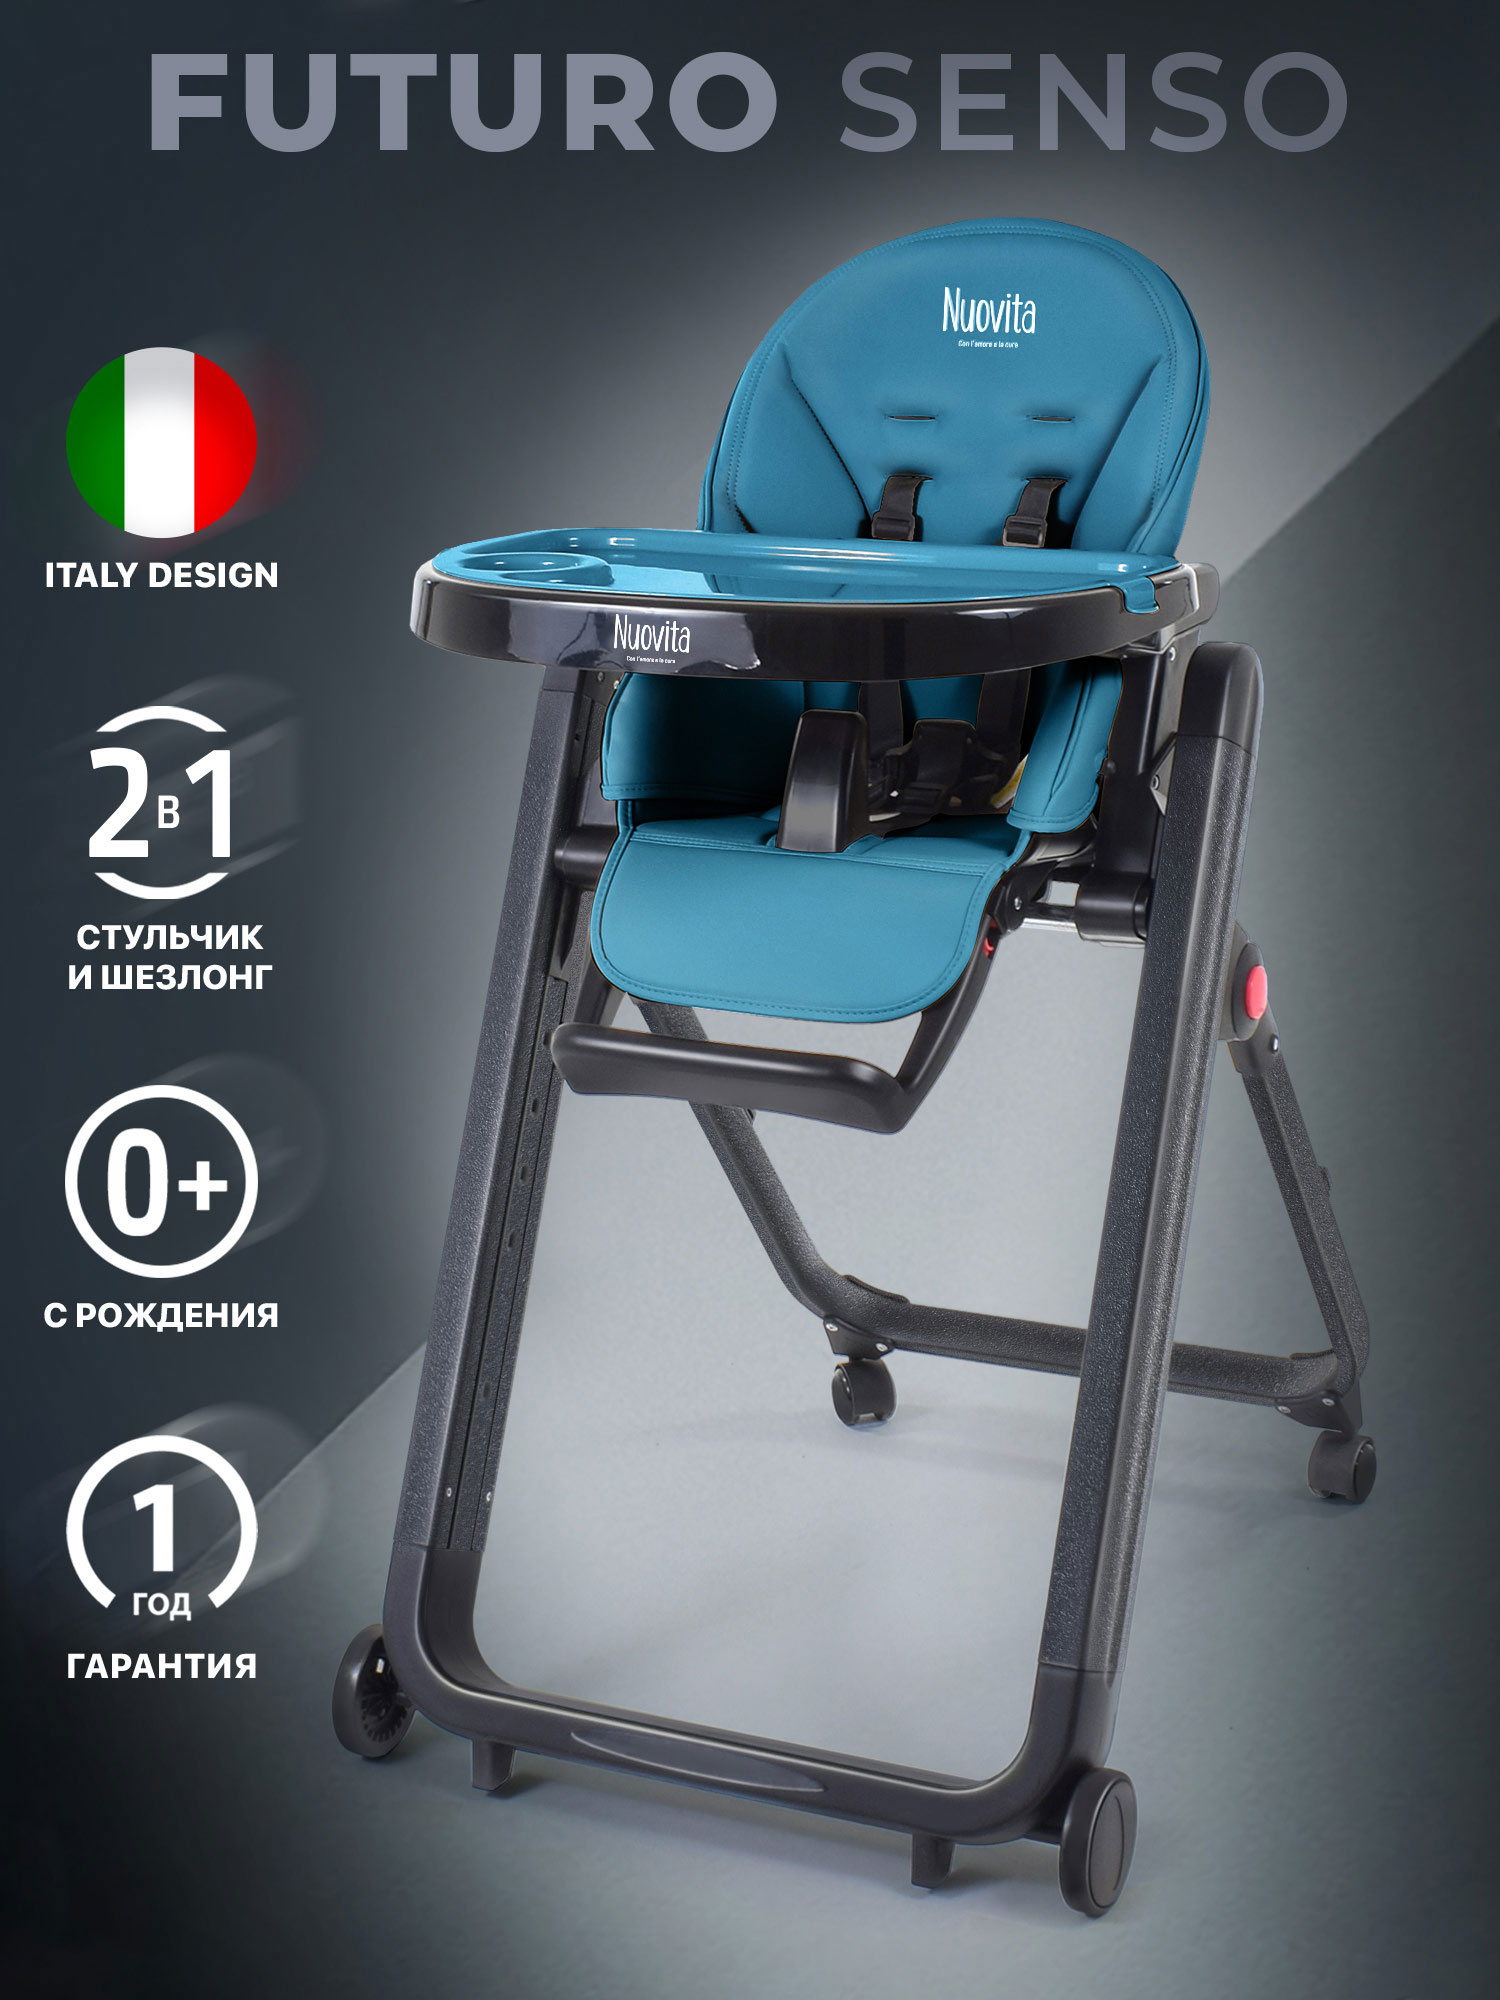 Стульчик для кормления Nuovita Futuro Senso Nero (Marino/Морской) стульчик для кормления nuovita futuro nero blu голубой